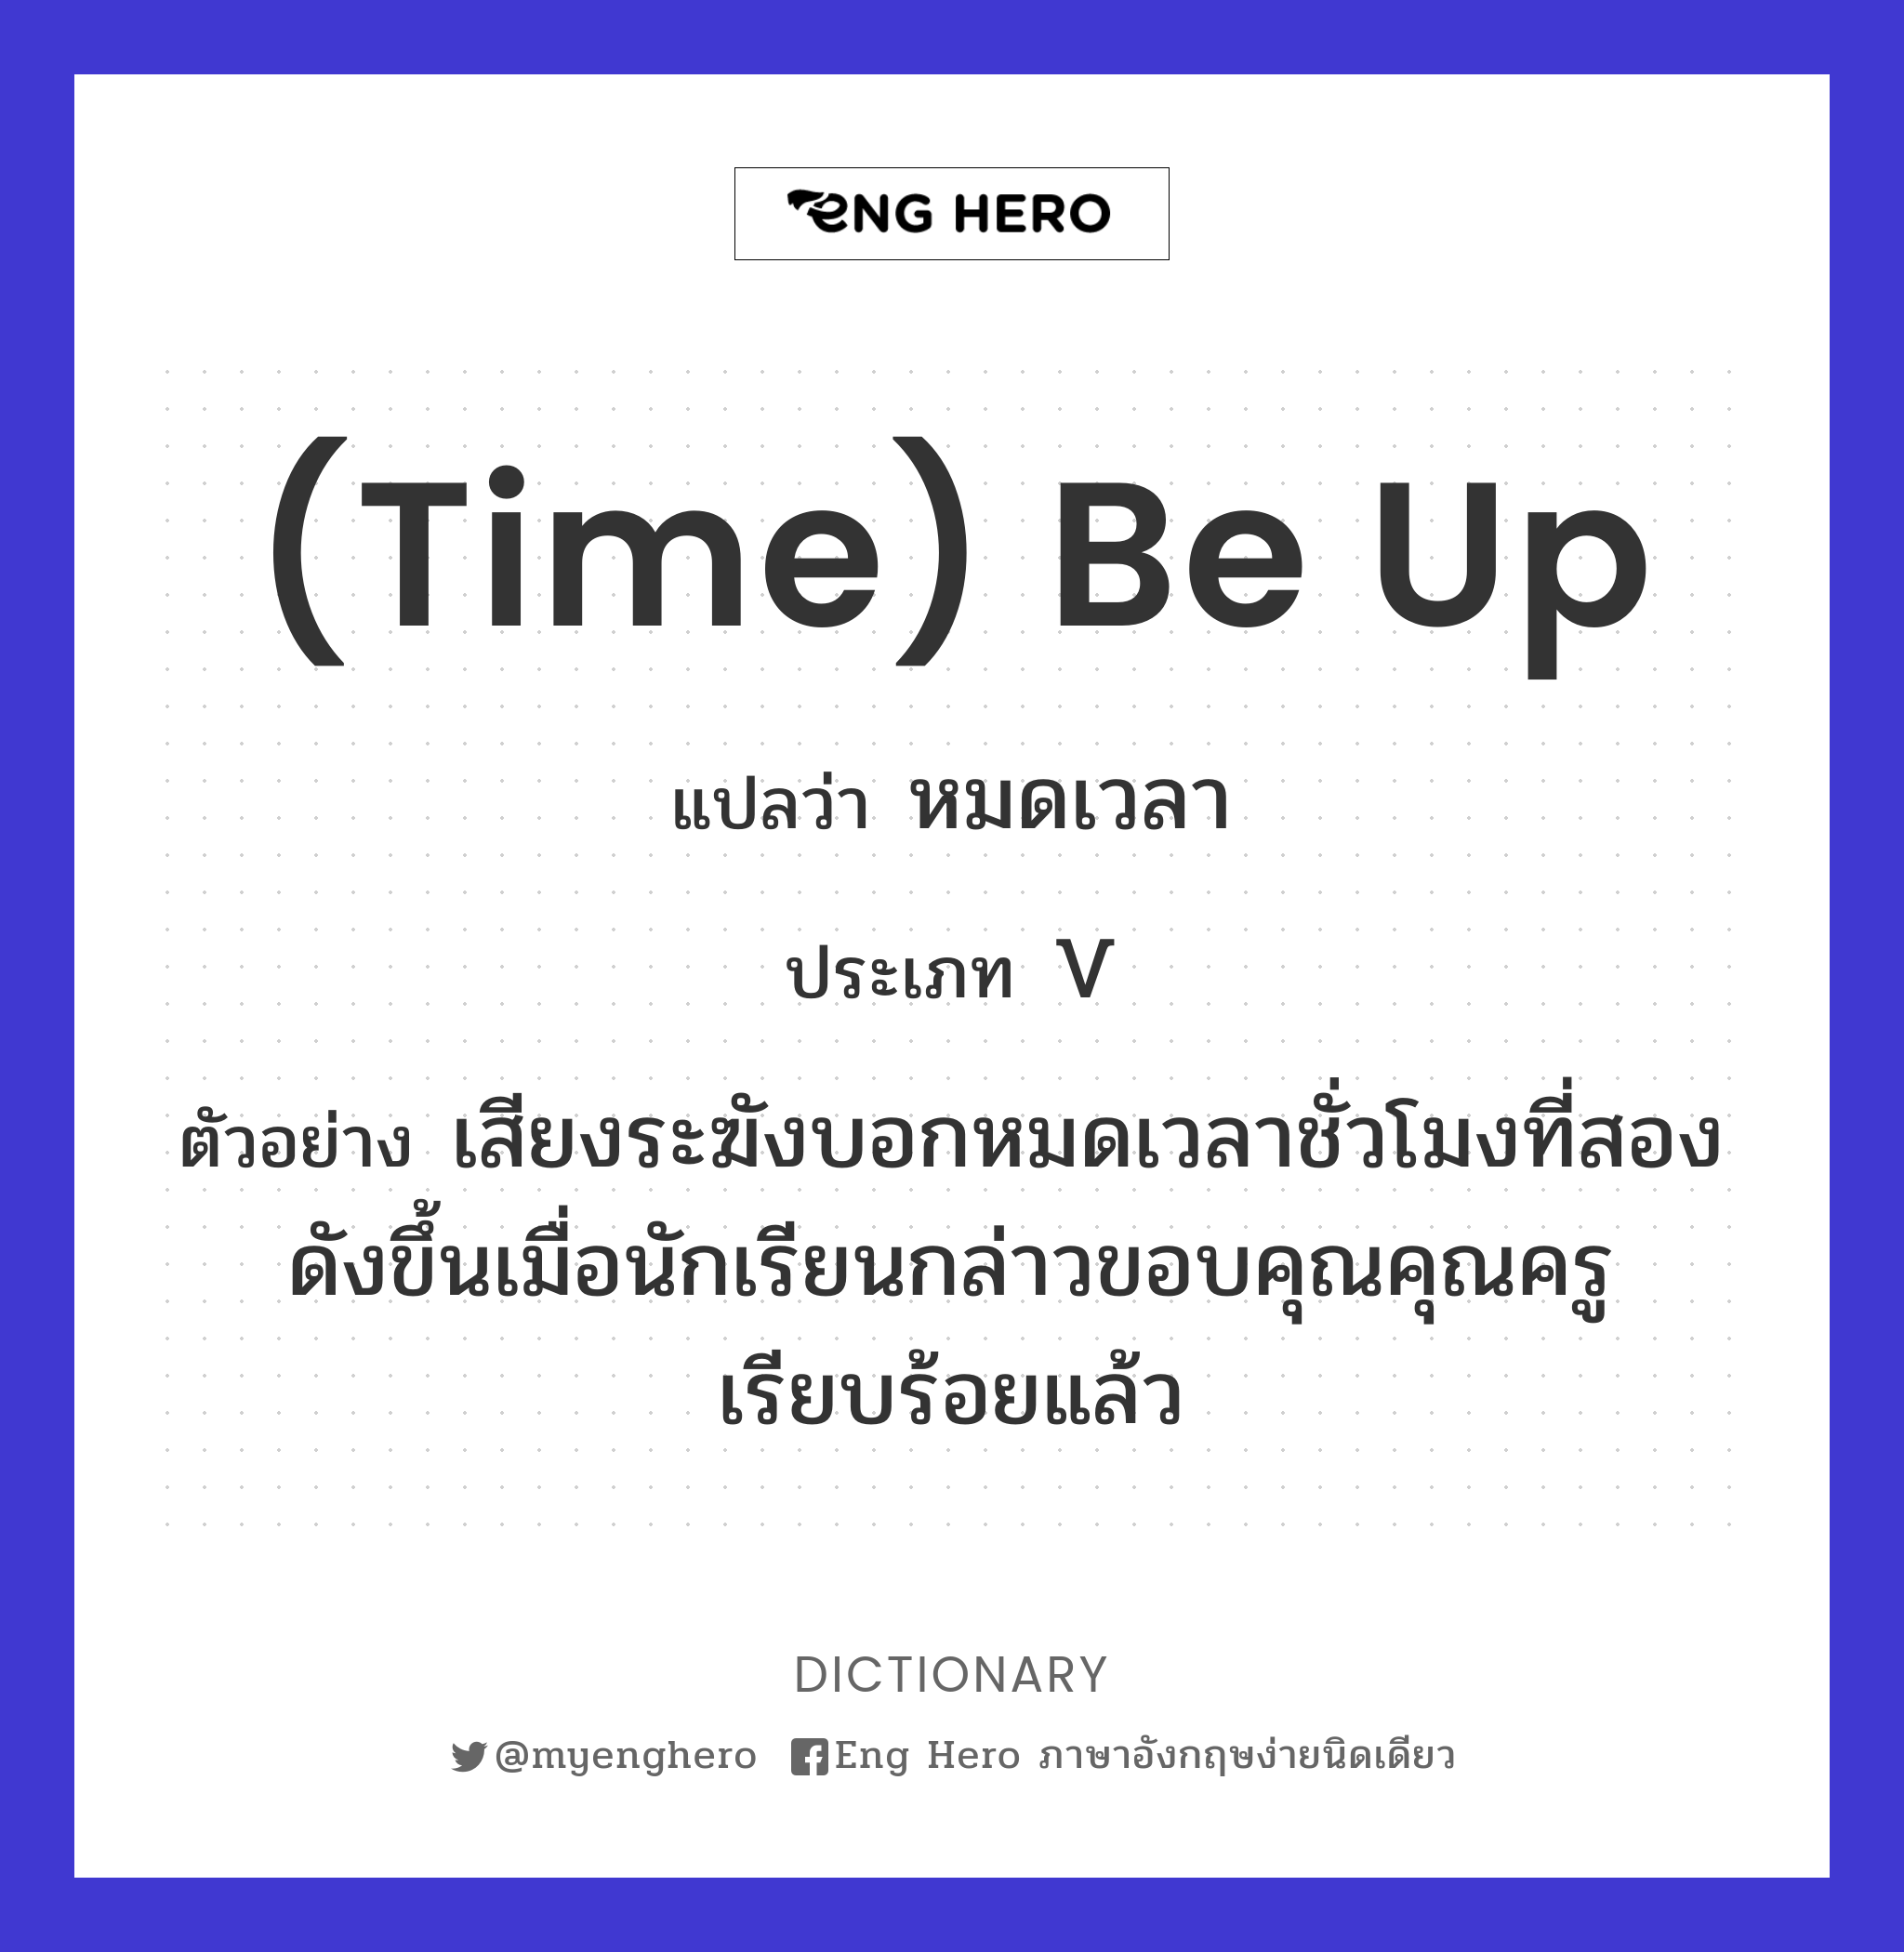 Time) Be Up แปลว่า หมดเวลา | Eng Hero เรียนภาษาอังกฤษ ออนไลน์ ฟรี